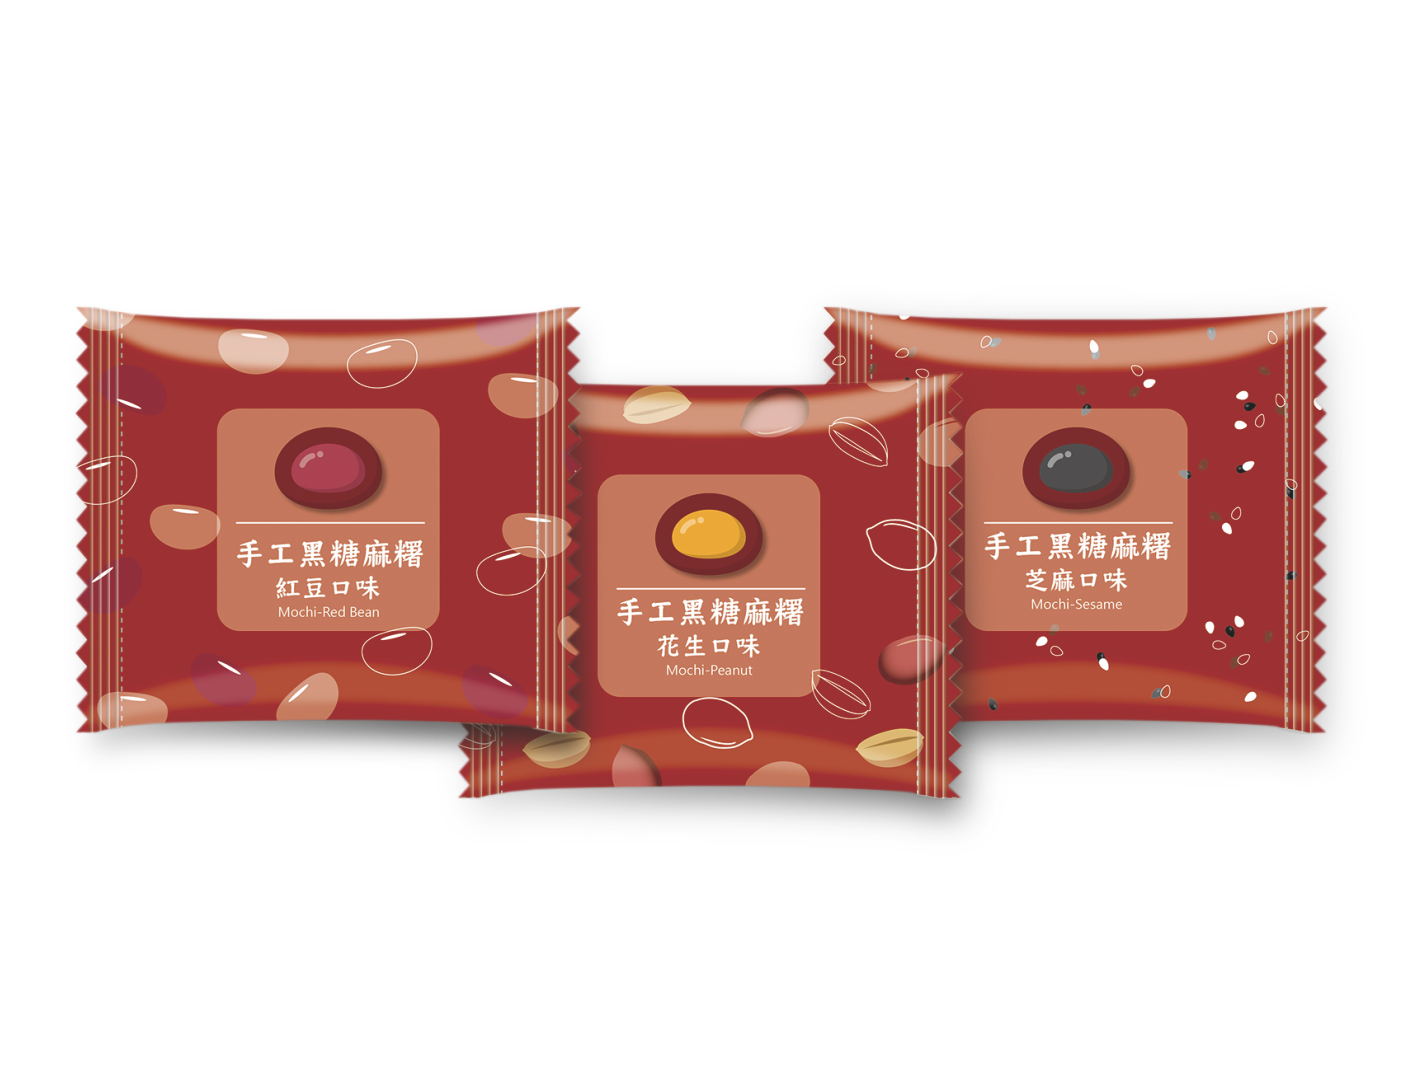 手工黑糖麻糬<br>Brown Sugar Mochi  |產品資訊|麻糬－通路用|手工麻糬系列-低溫